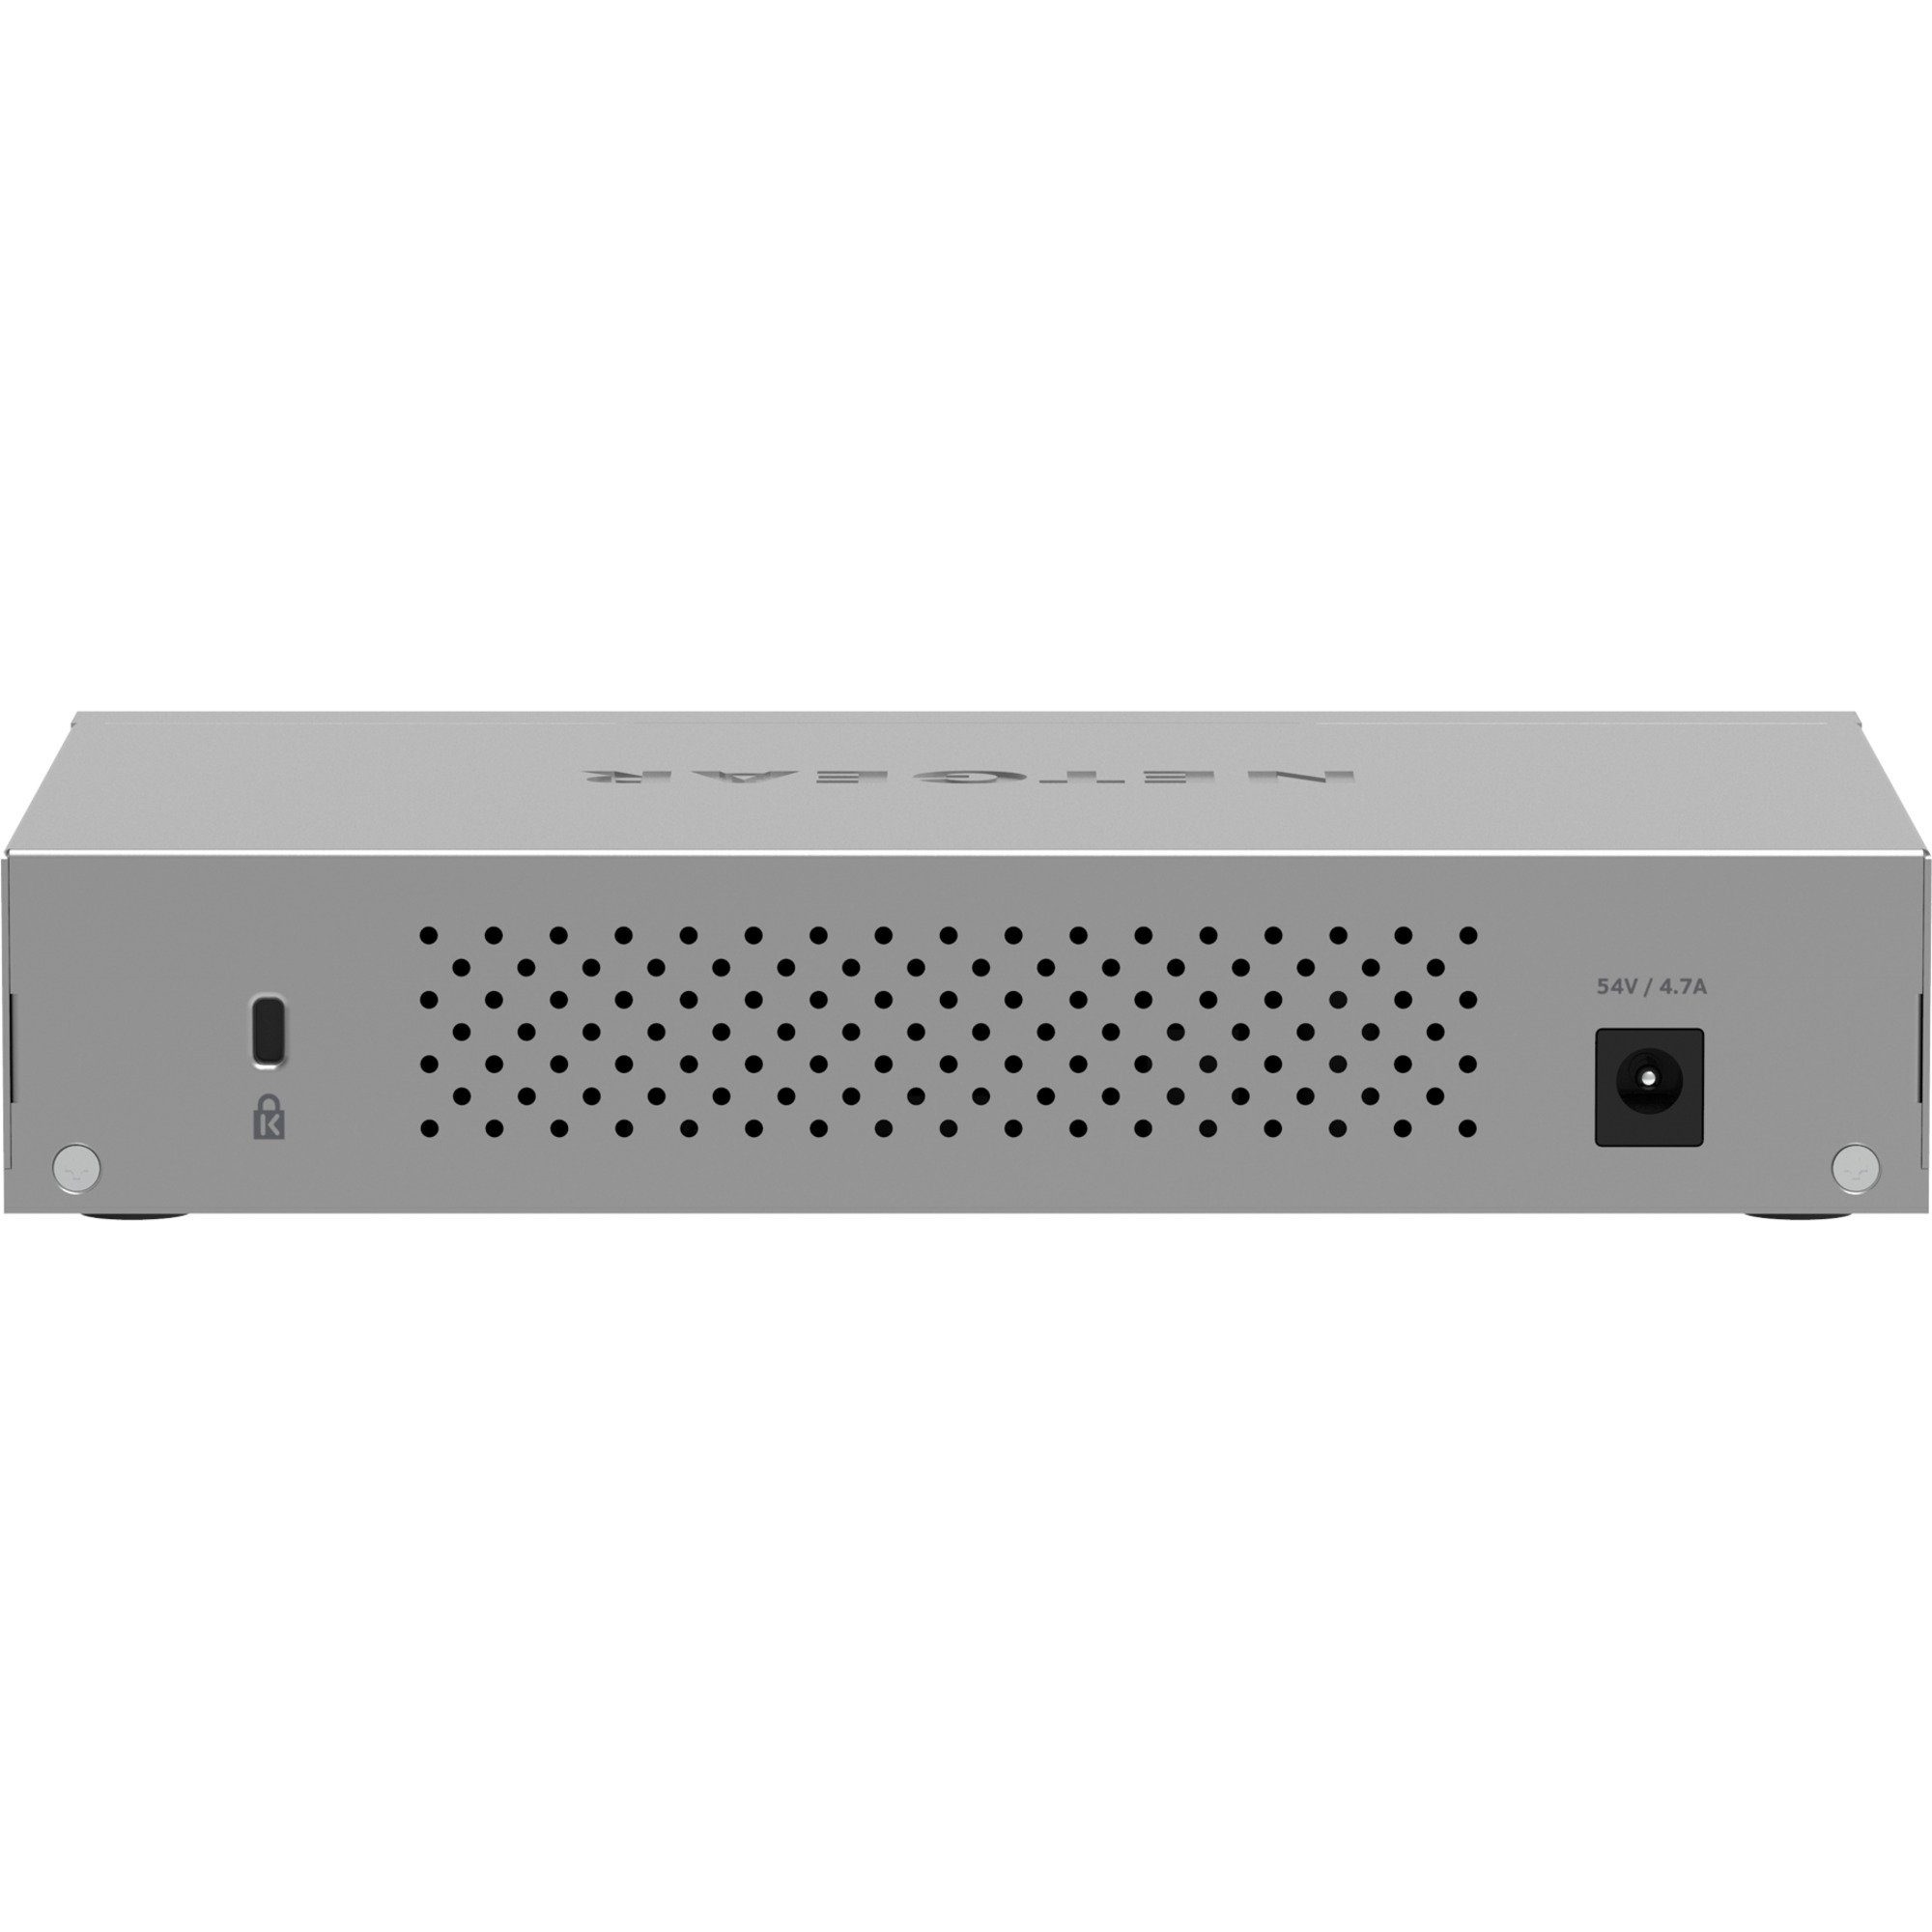 MS108UP 60 Netzwerk-Switch 8-Port Ultra NETGEAR PoE, Netgear Switch